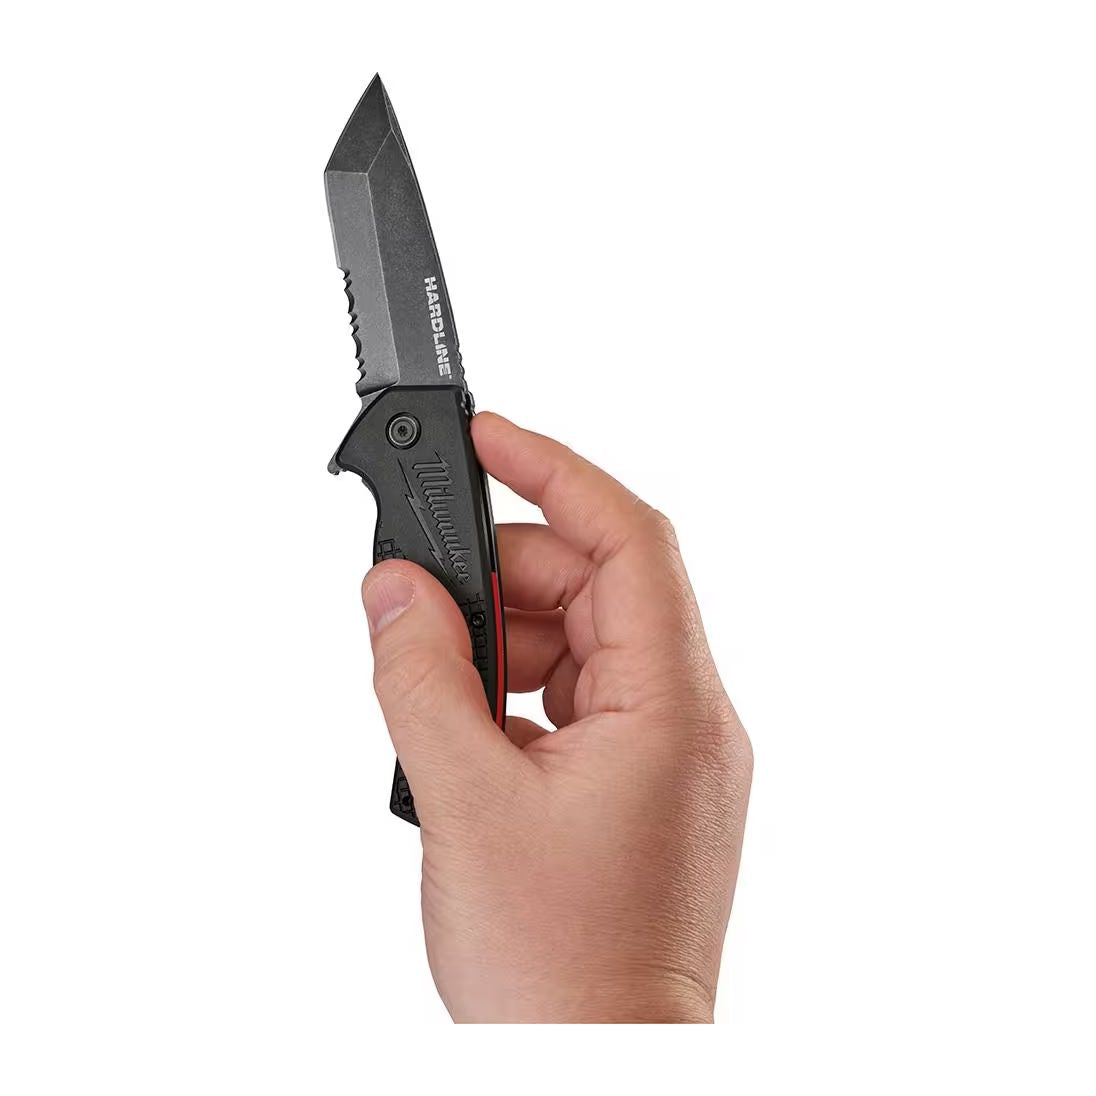 48-22-1998 - 3” HARDLINE Serrated Blade Pocket Knife